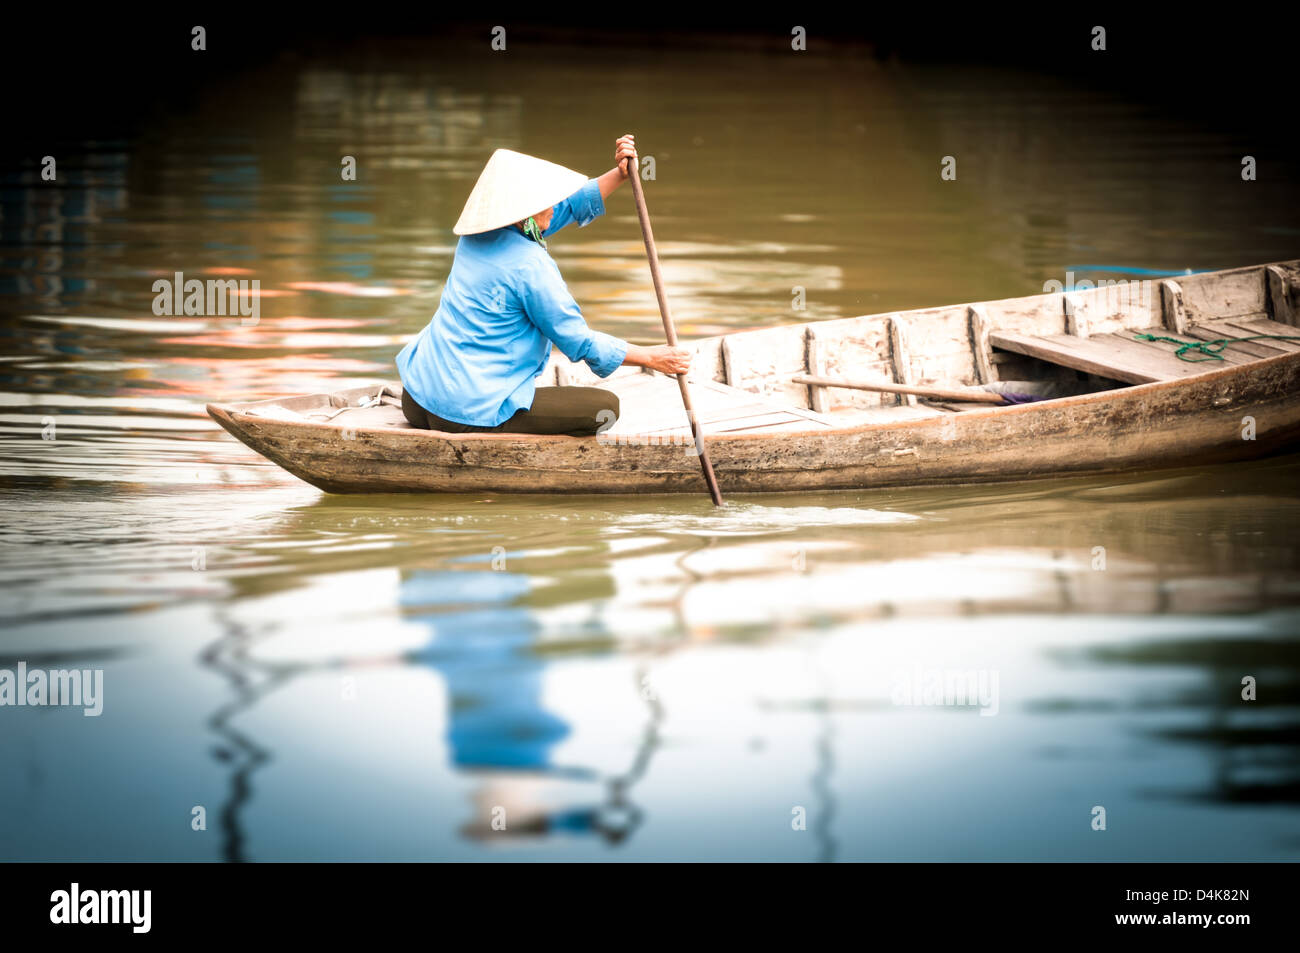 Frau in konische Hut sitzt auf Kanu und Rudern. Traditionelle asiatische Boot aus Holz gebaut. Person Paddel in den Händen halten. Welligkeit auf Stockfoto